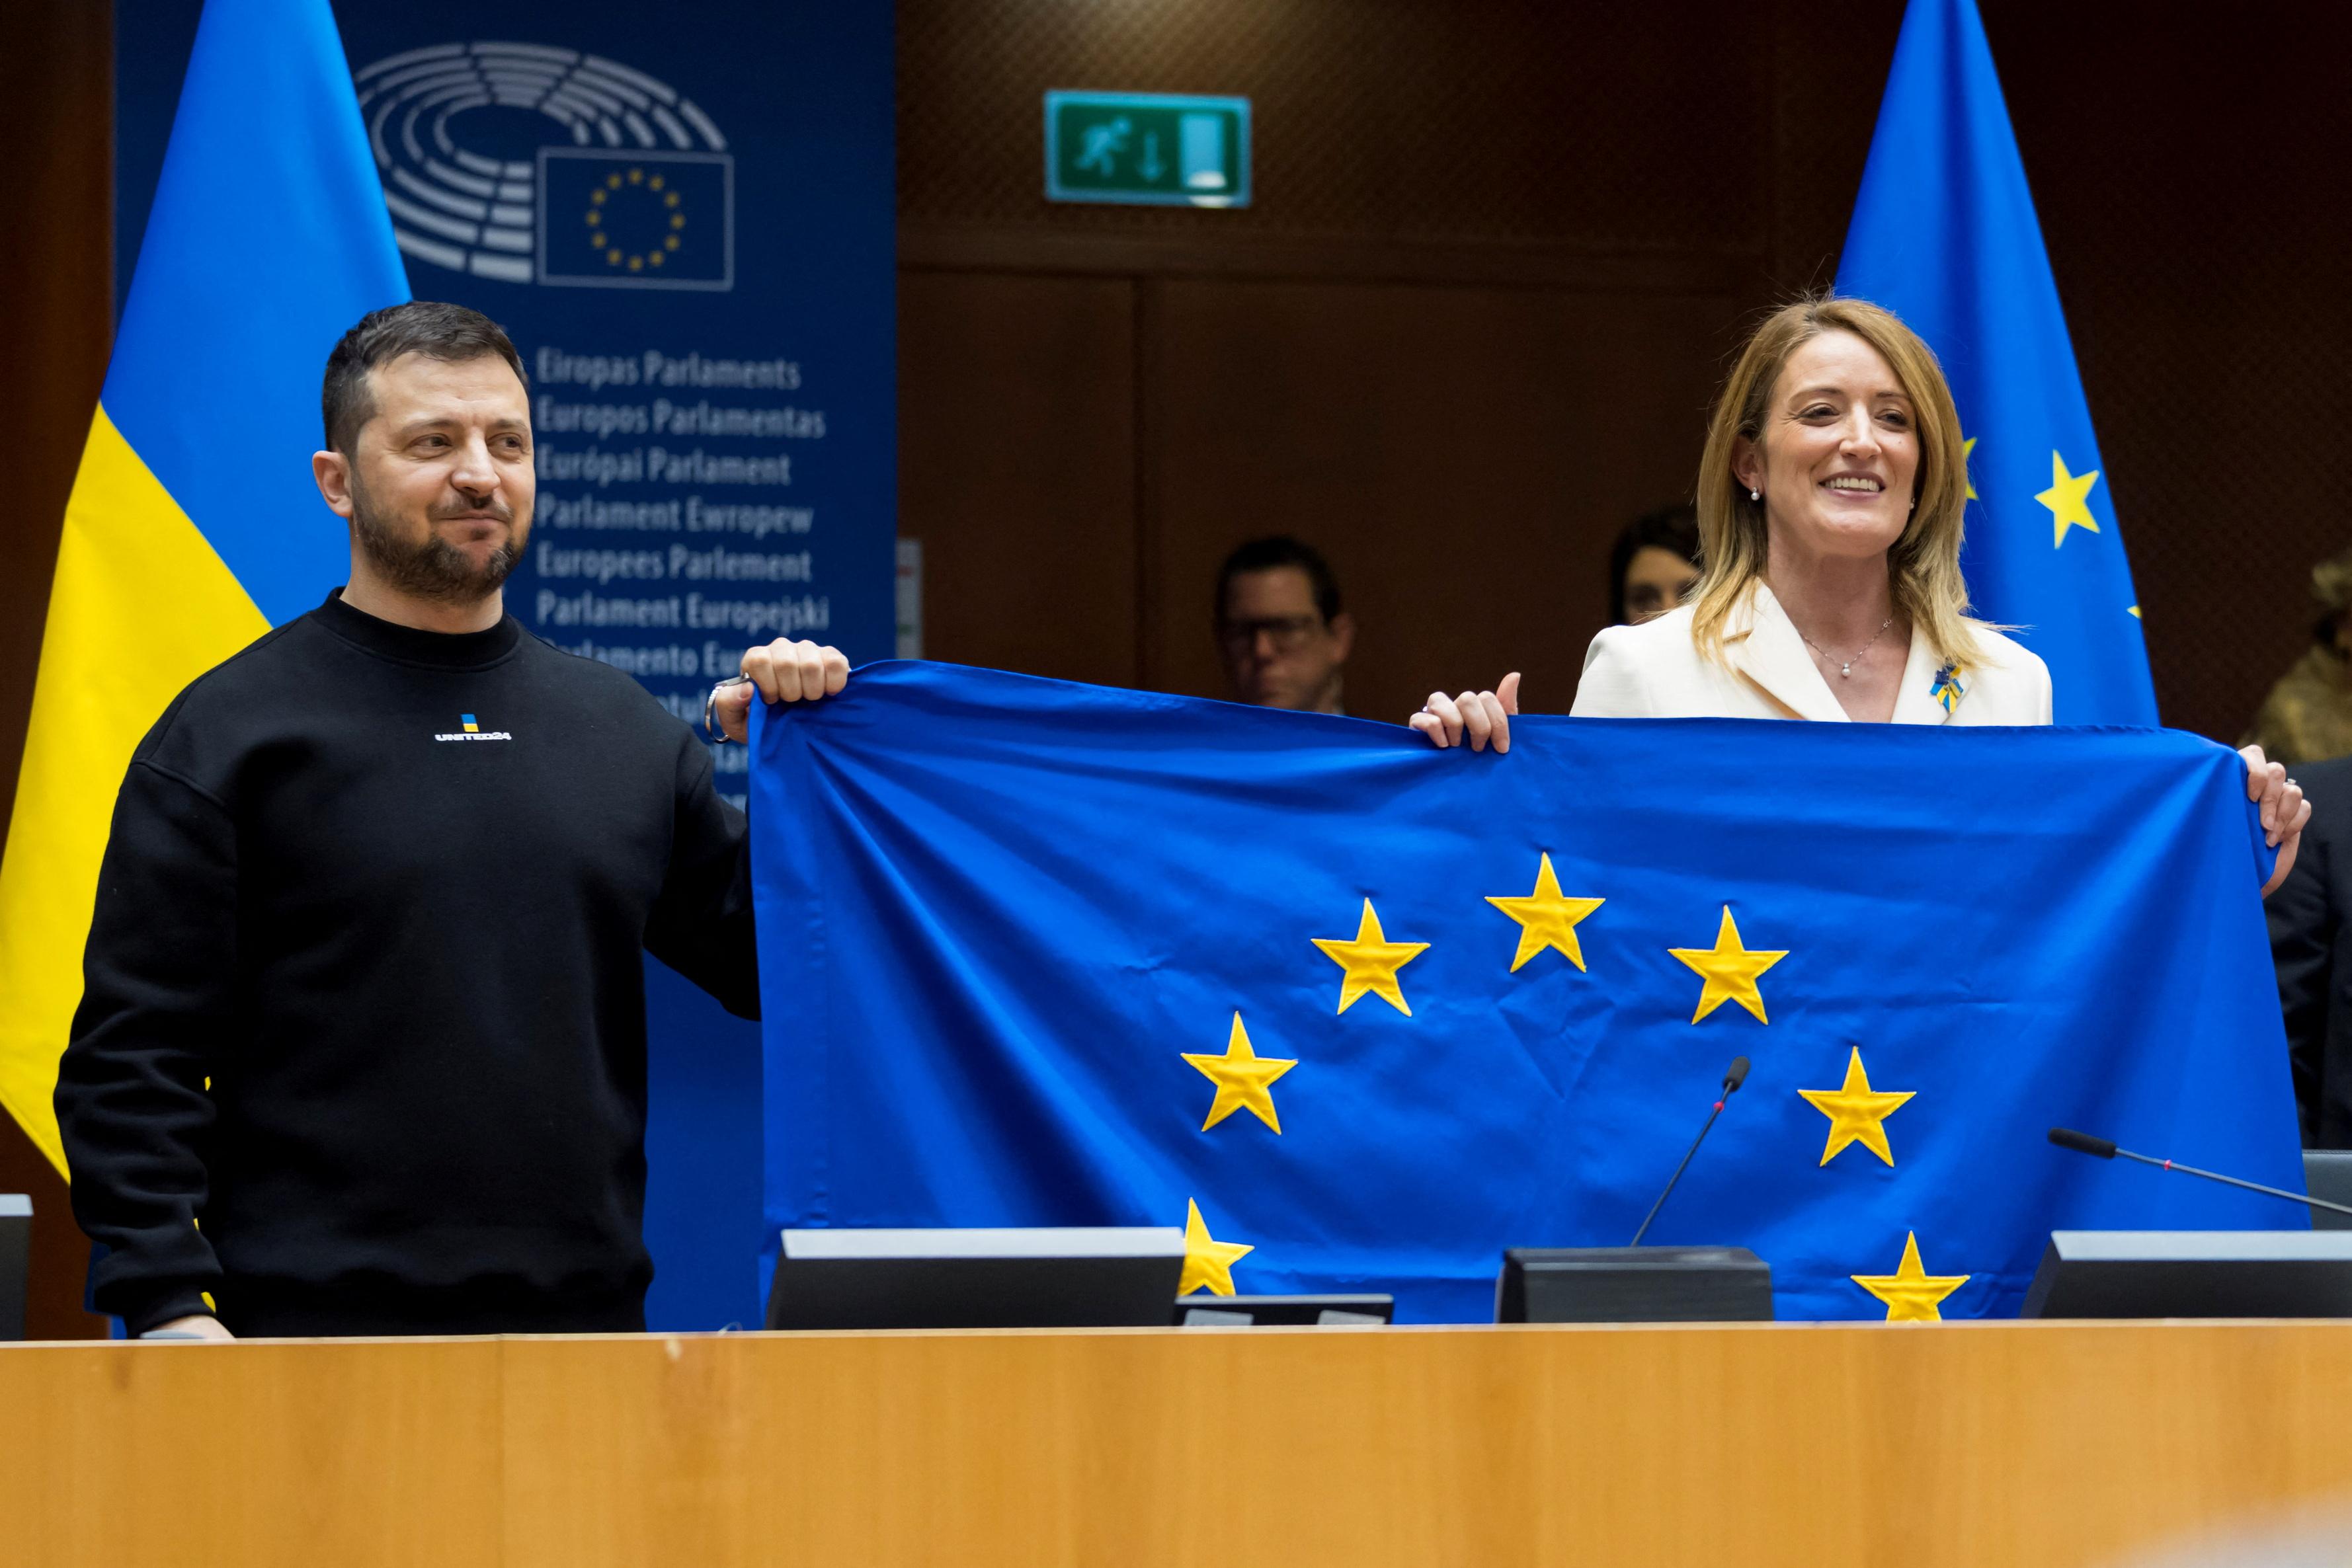 La présidente du Parlement européen Roberta Metsola et le président ukrainien Volodymyr Zelensky tiennent un drapeau de l'UE lors de la visite de ce dernier à Bruxelles, le 9 février 2023. Des négociations d'adhésion ont été annoncées le 14 décembre, mais le chemin est encore long avant que l'Ukraine ne rejoigne les 27. [REuters - Daina Le Lardic/Union européenne]